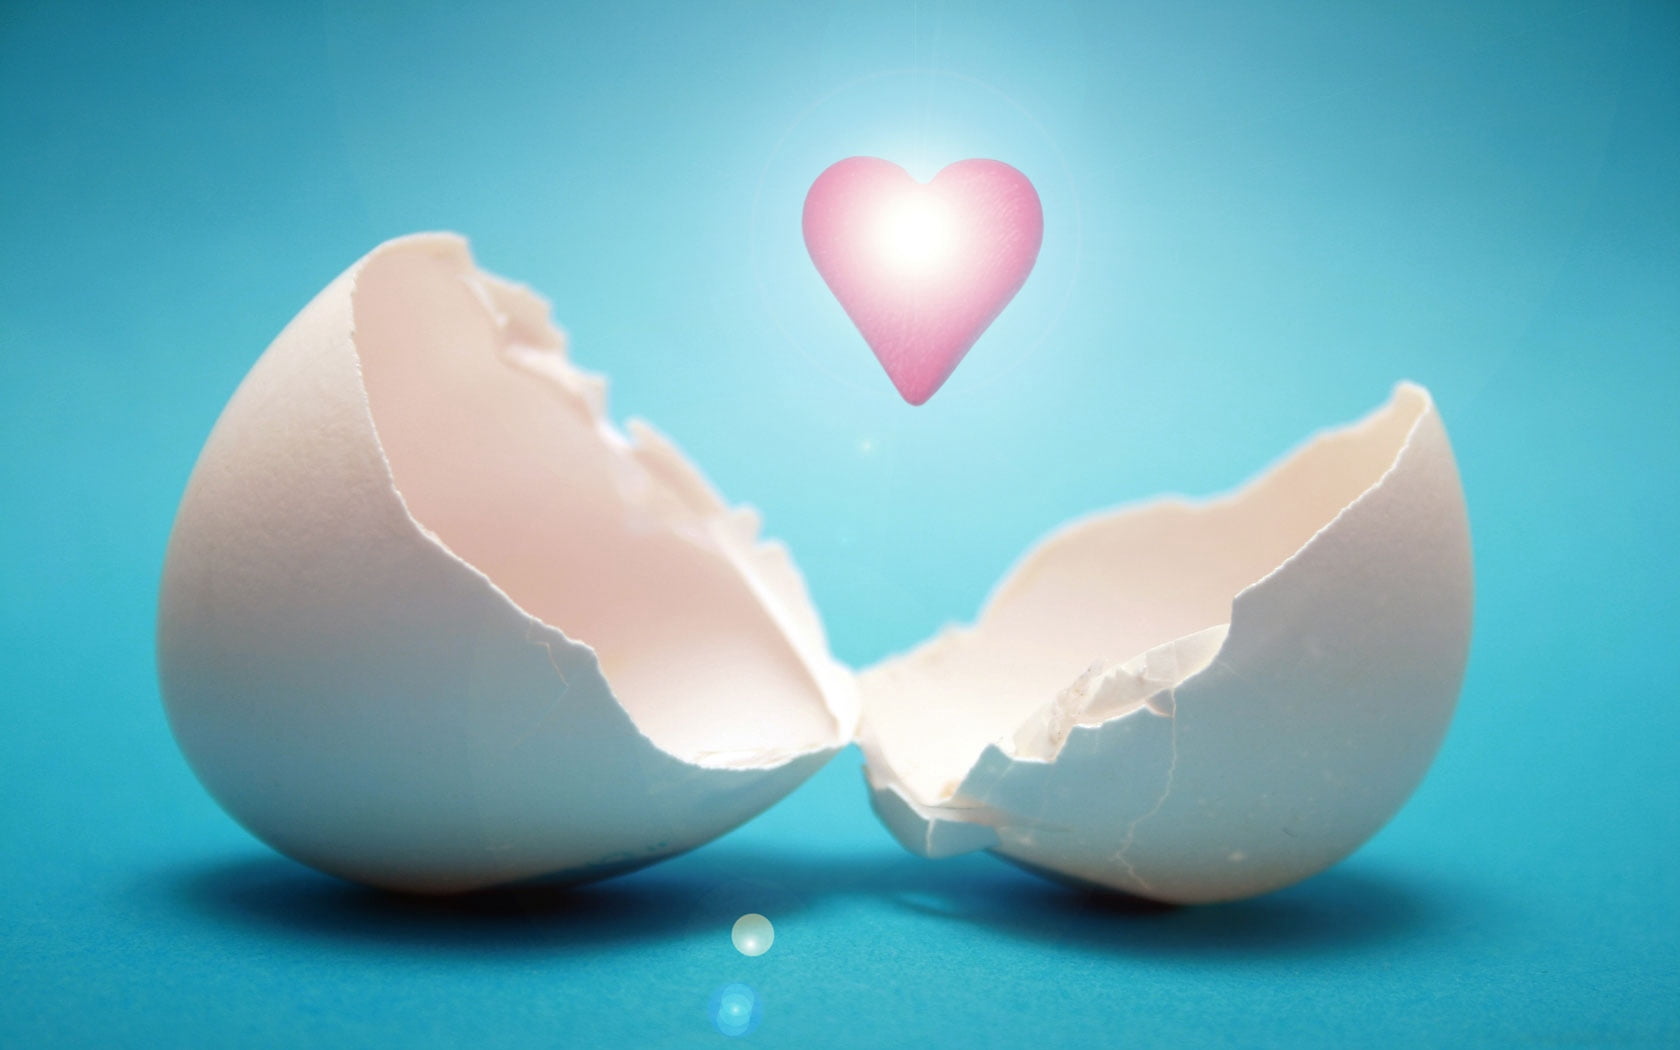 white egg shell, heart, light, studio shot, colored background